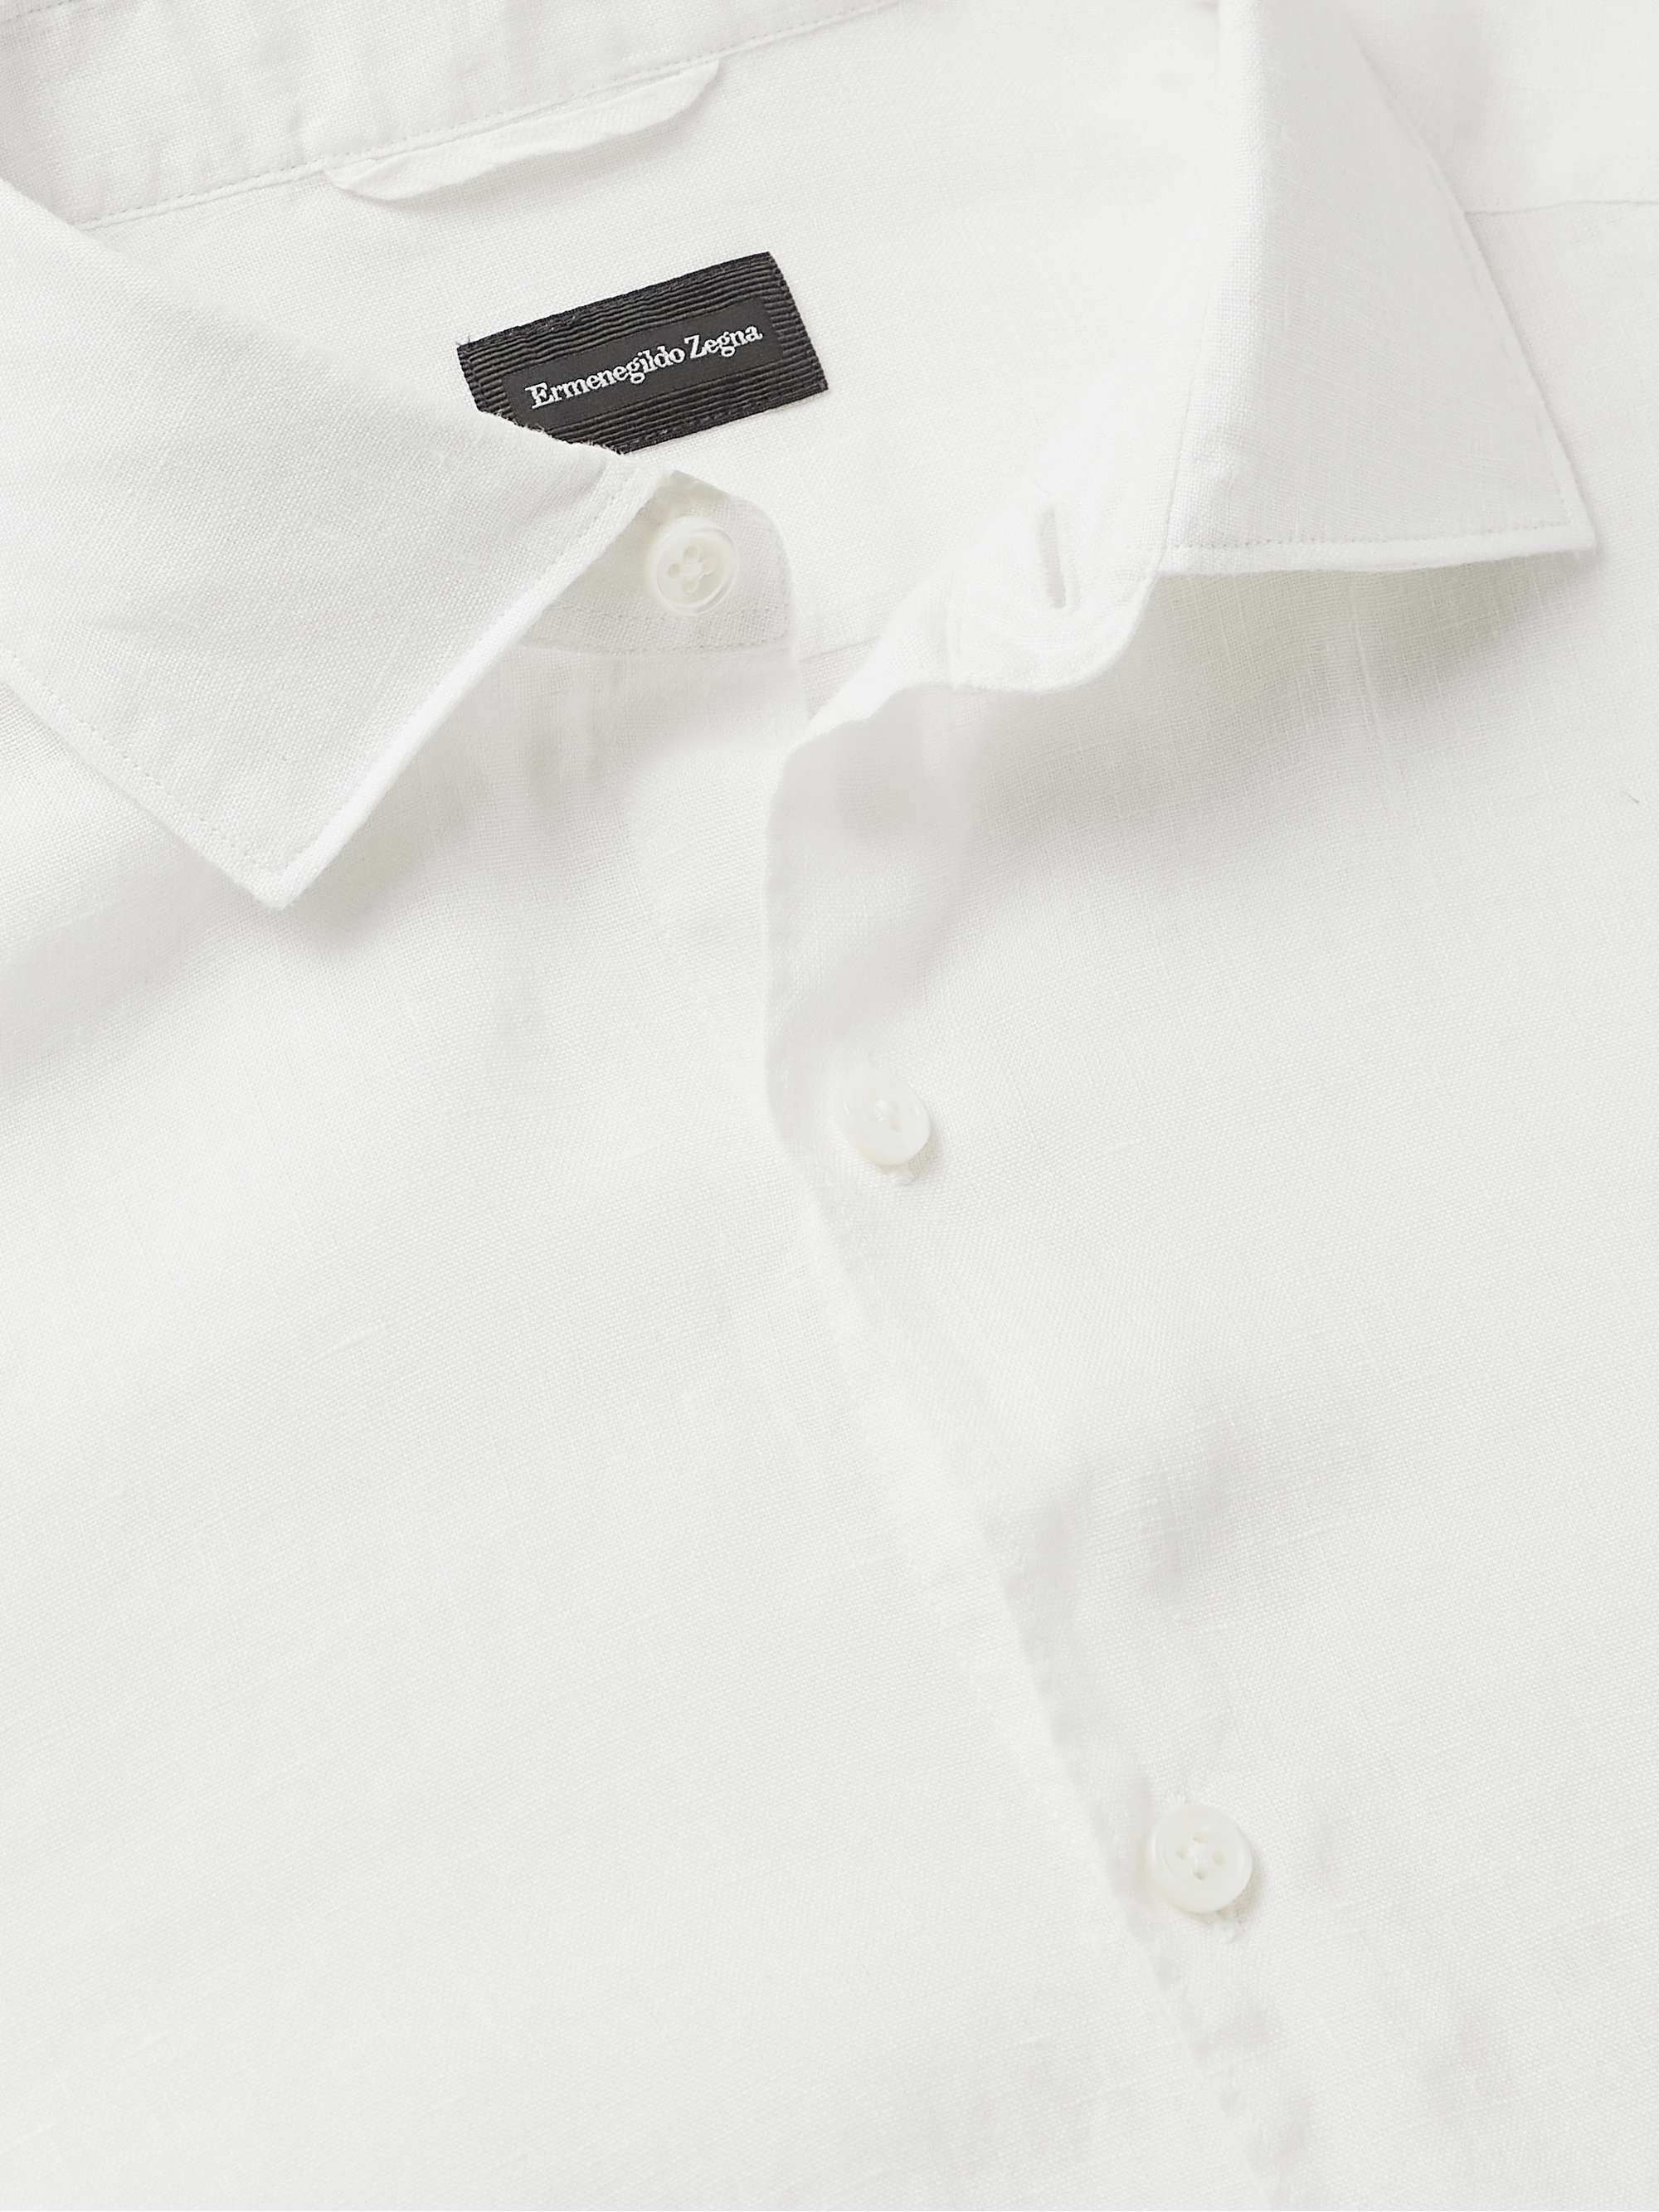 ZEGNA Linen Shirt